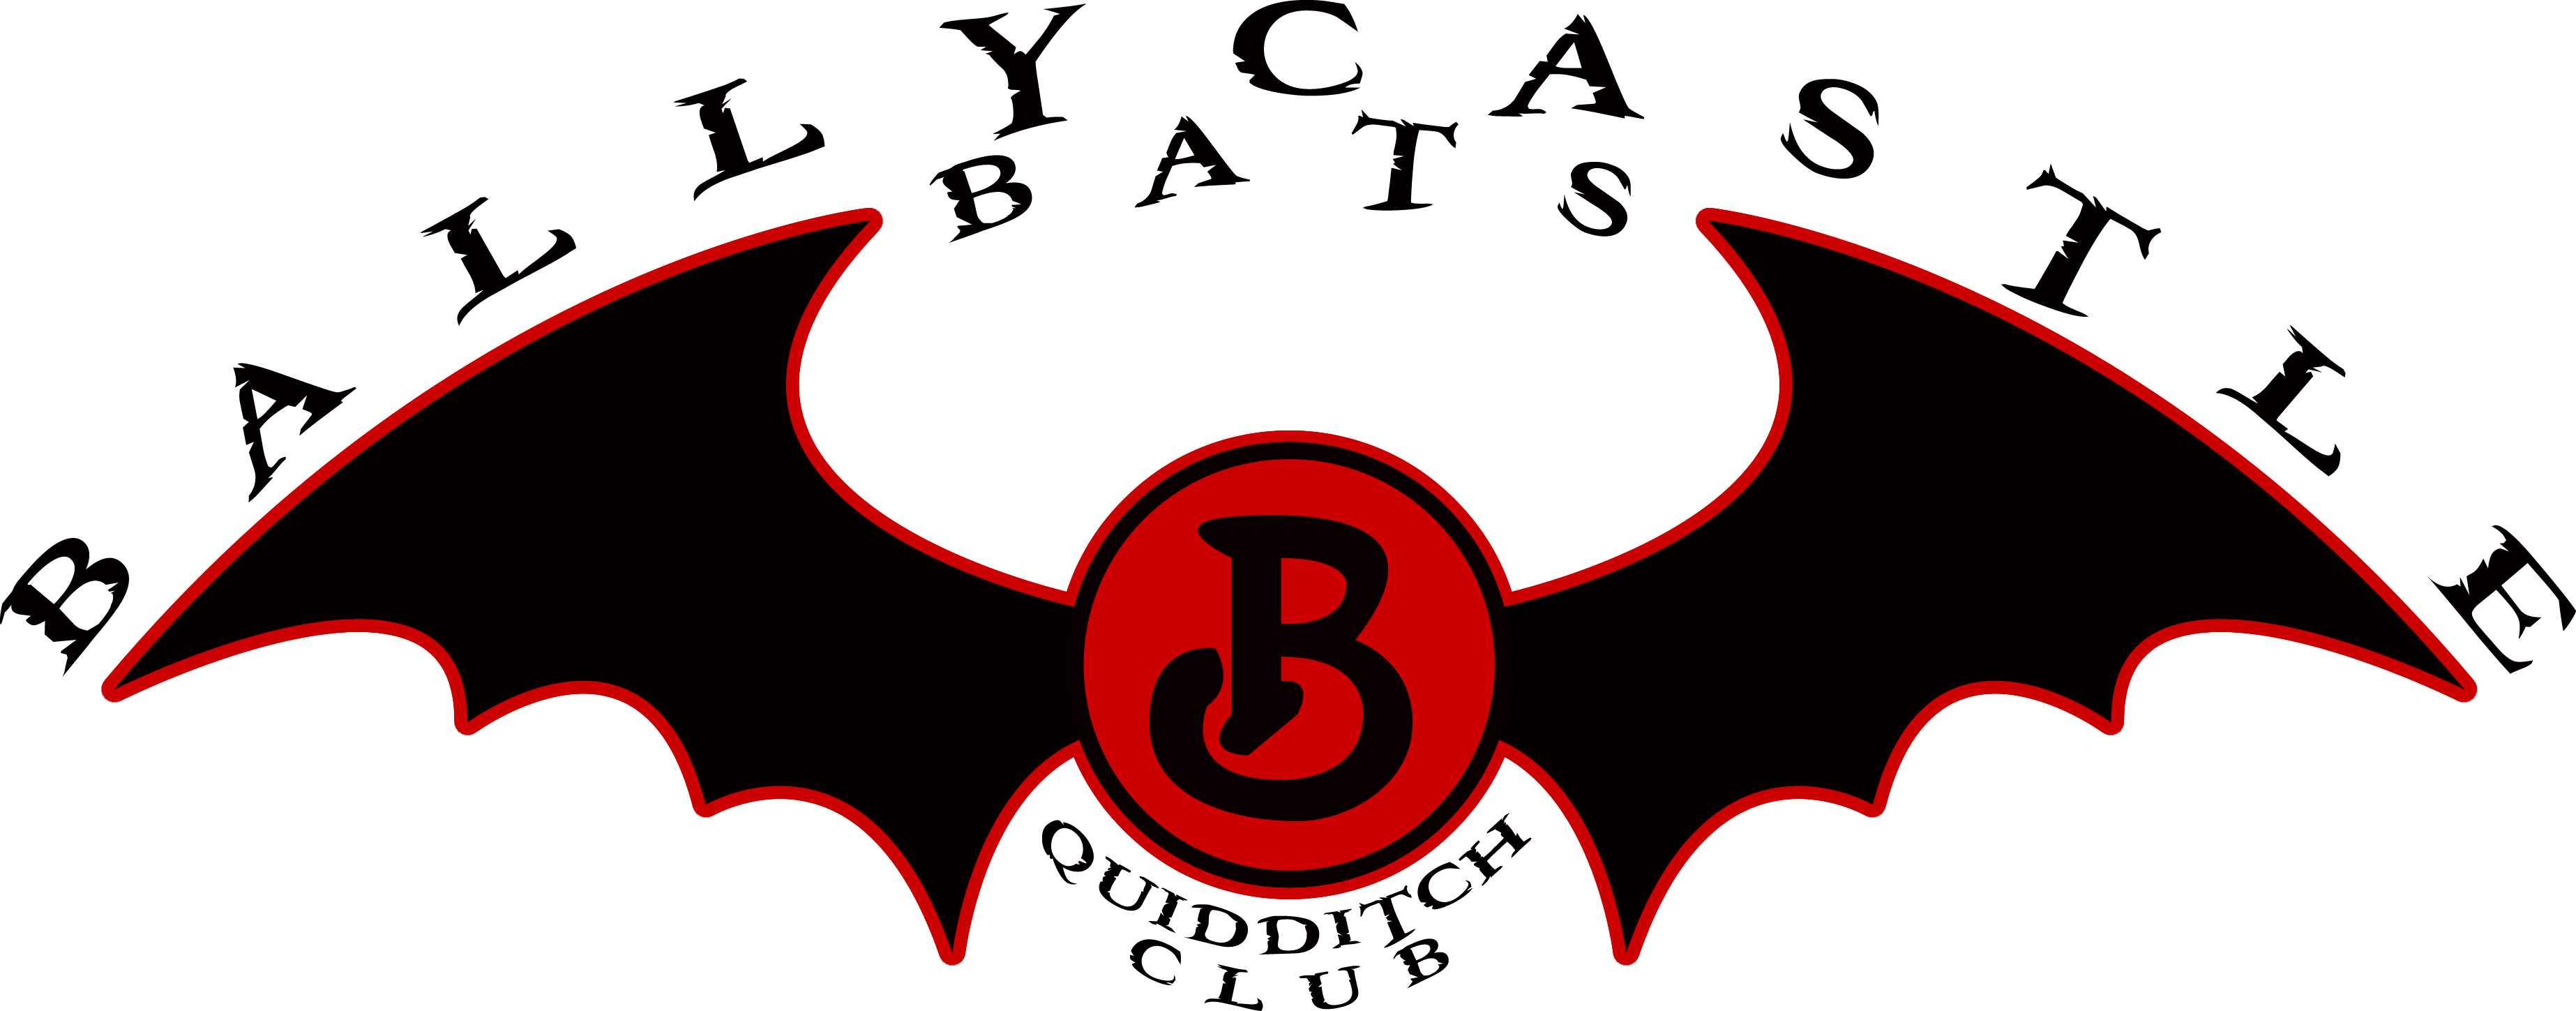 Ballycastle Bats logo 1